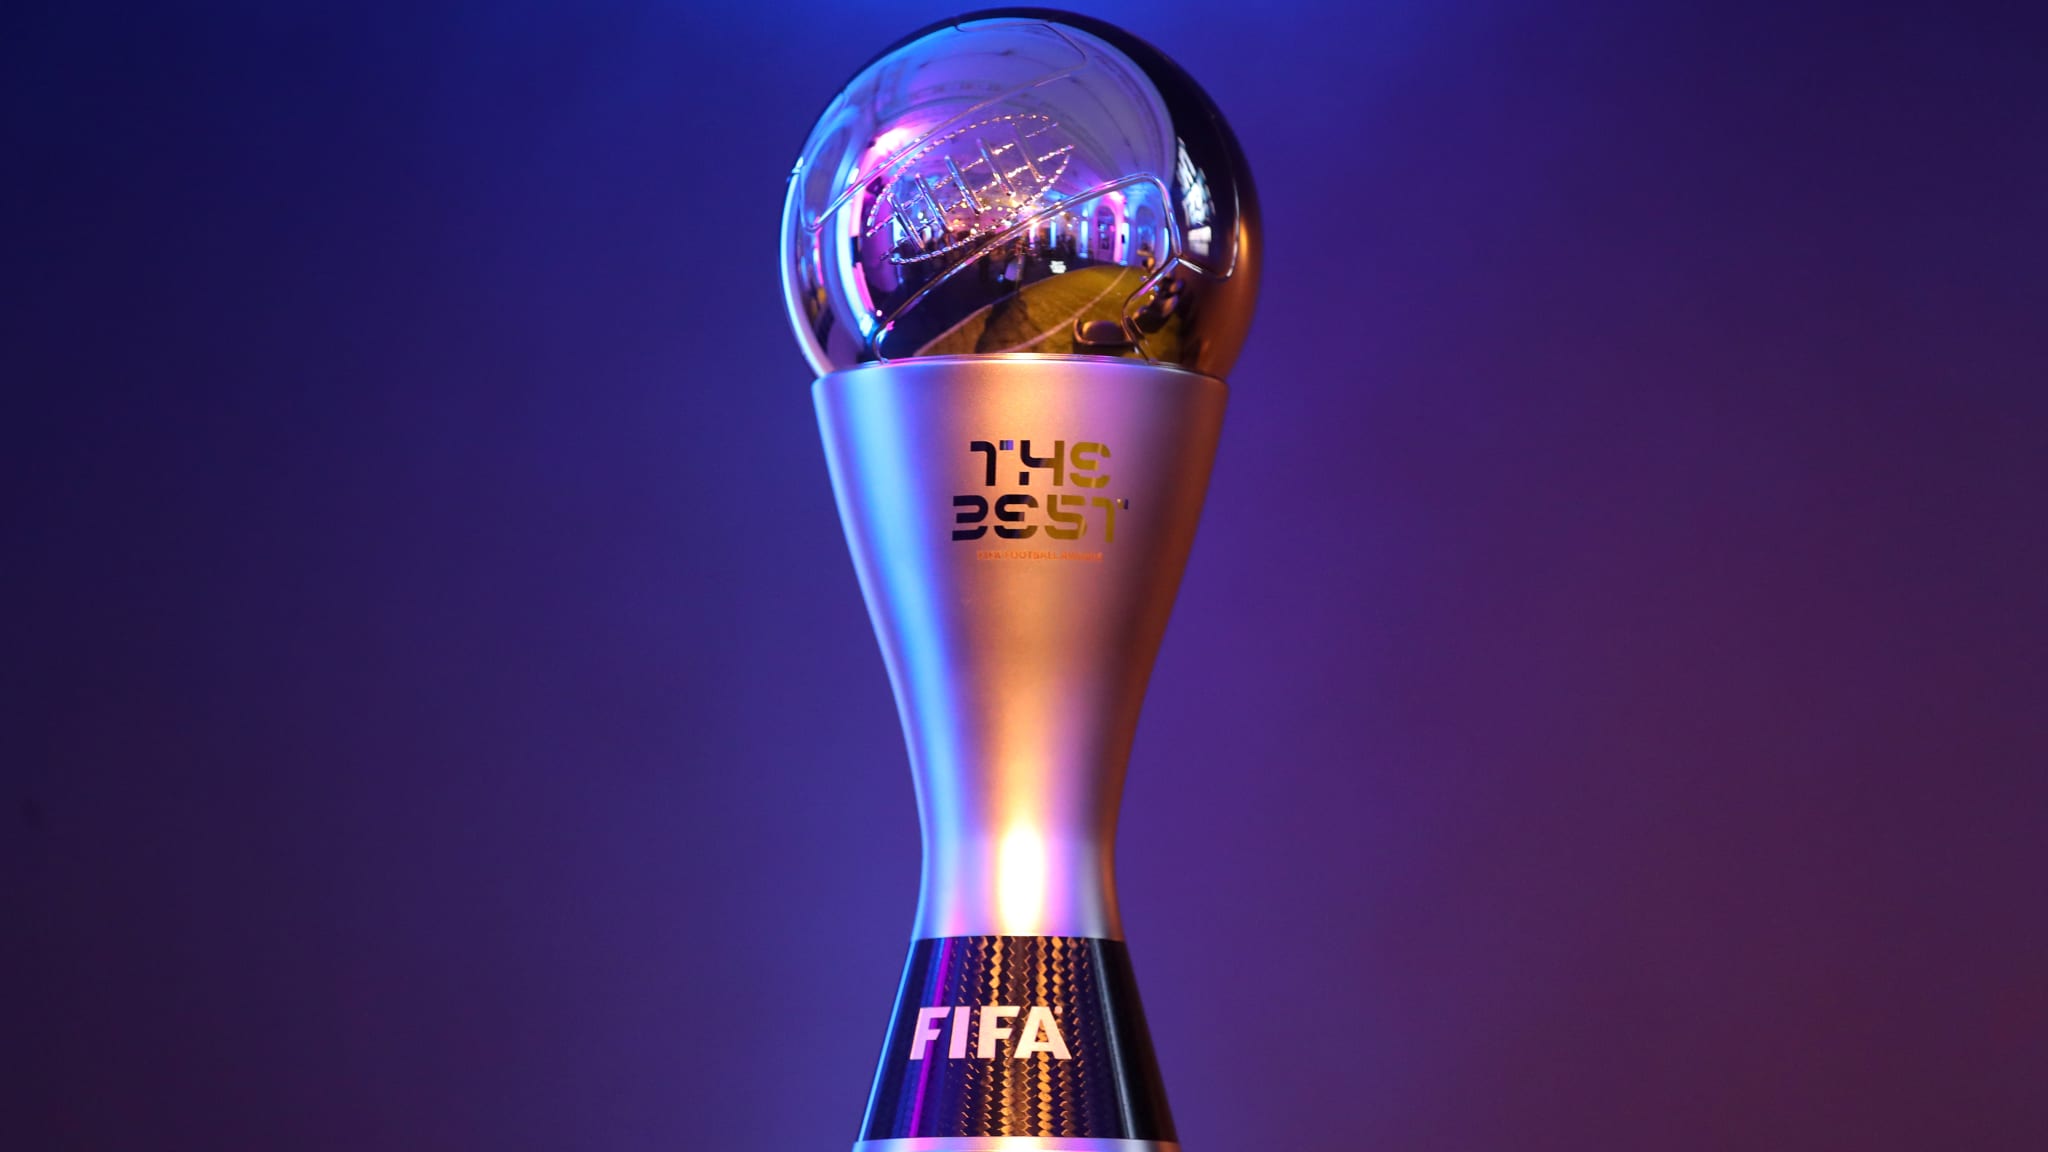 Insolite : une grande star s’est fait voler son trophée FIFA The Best